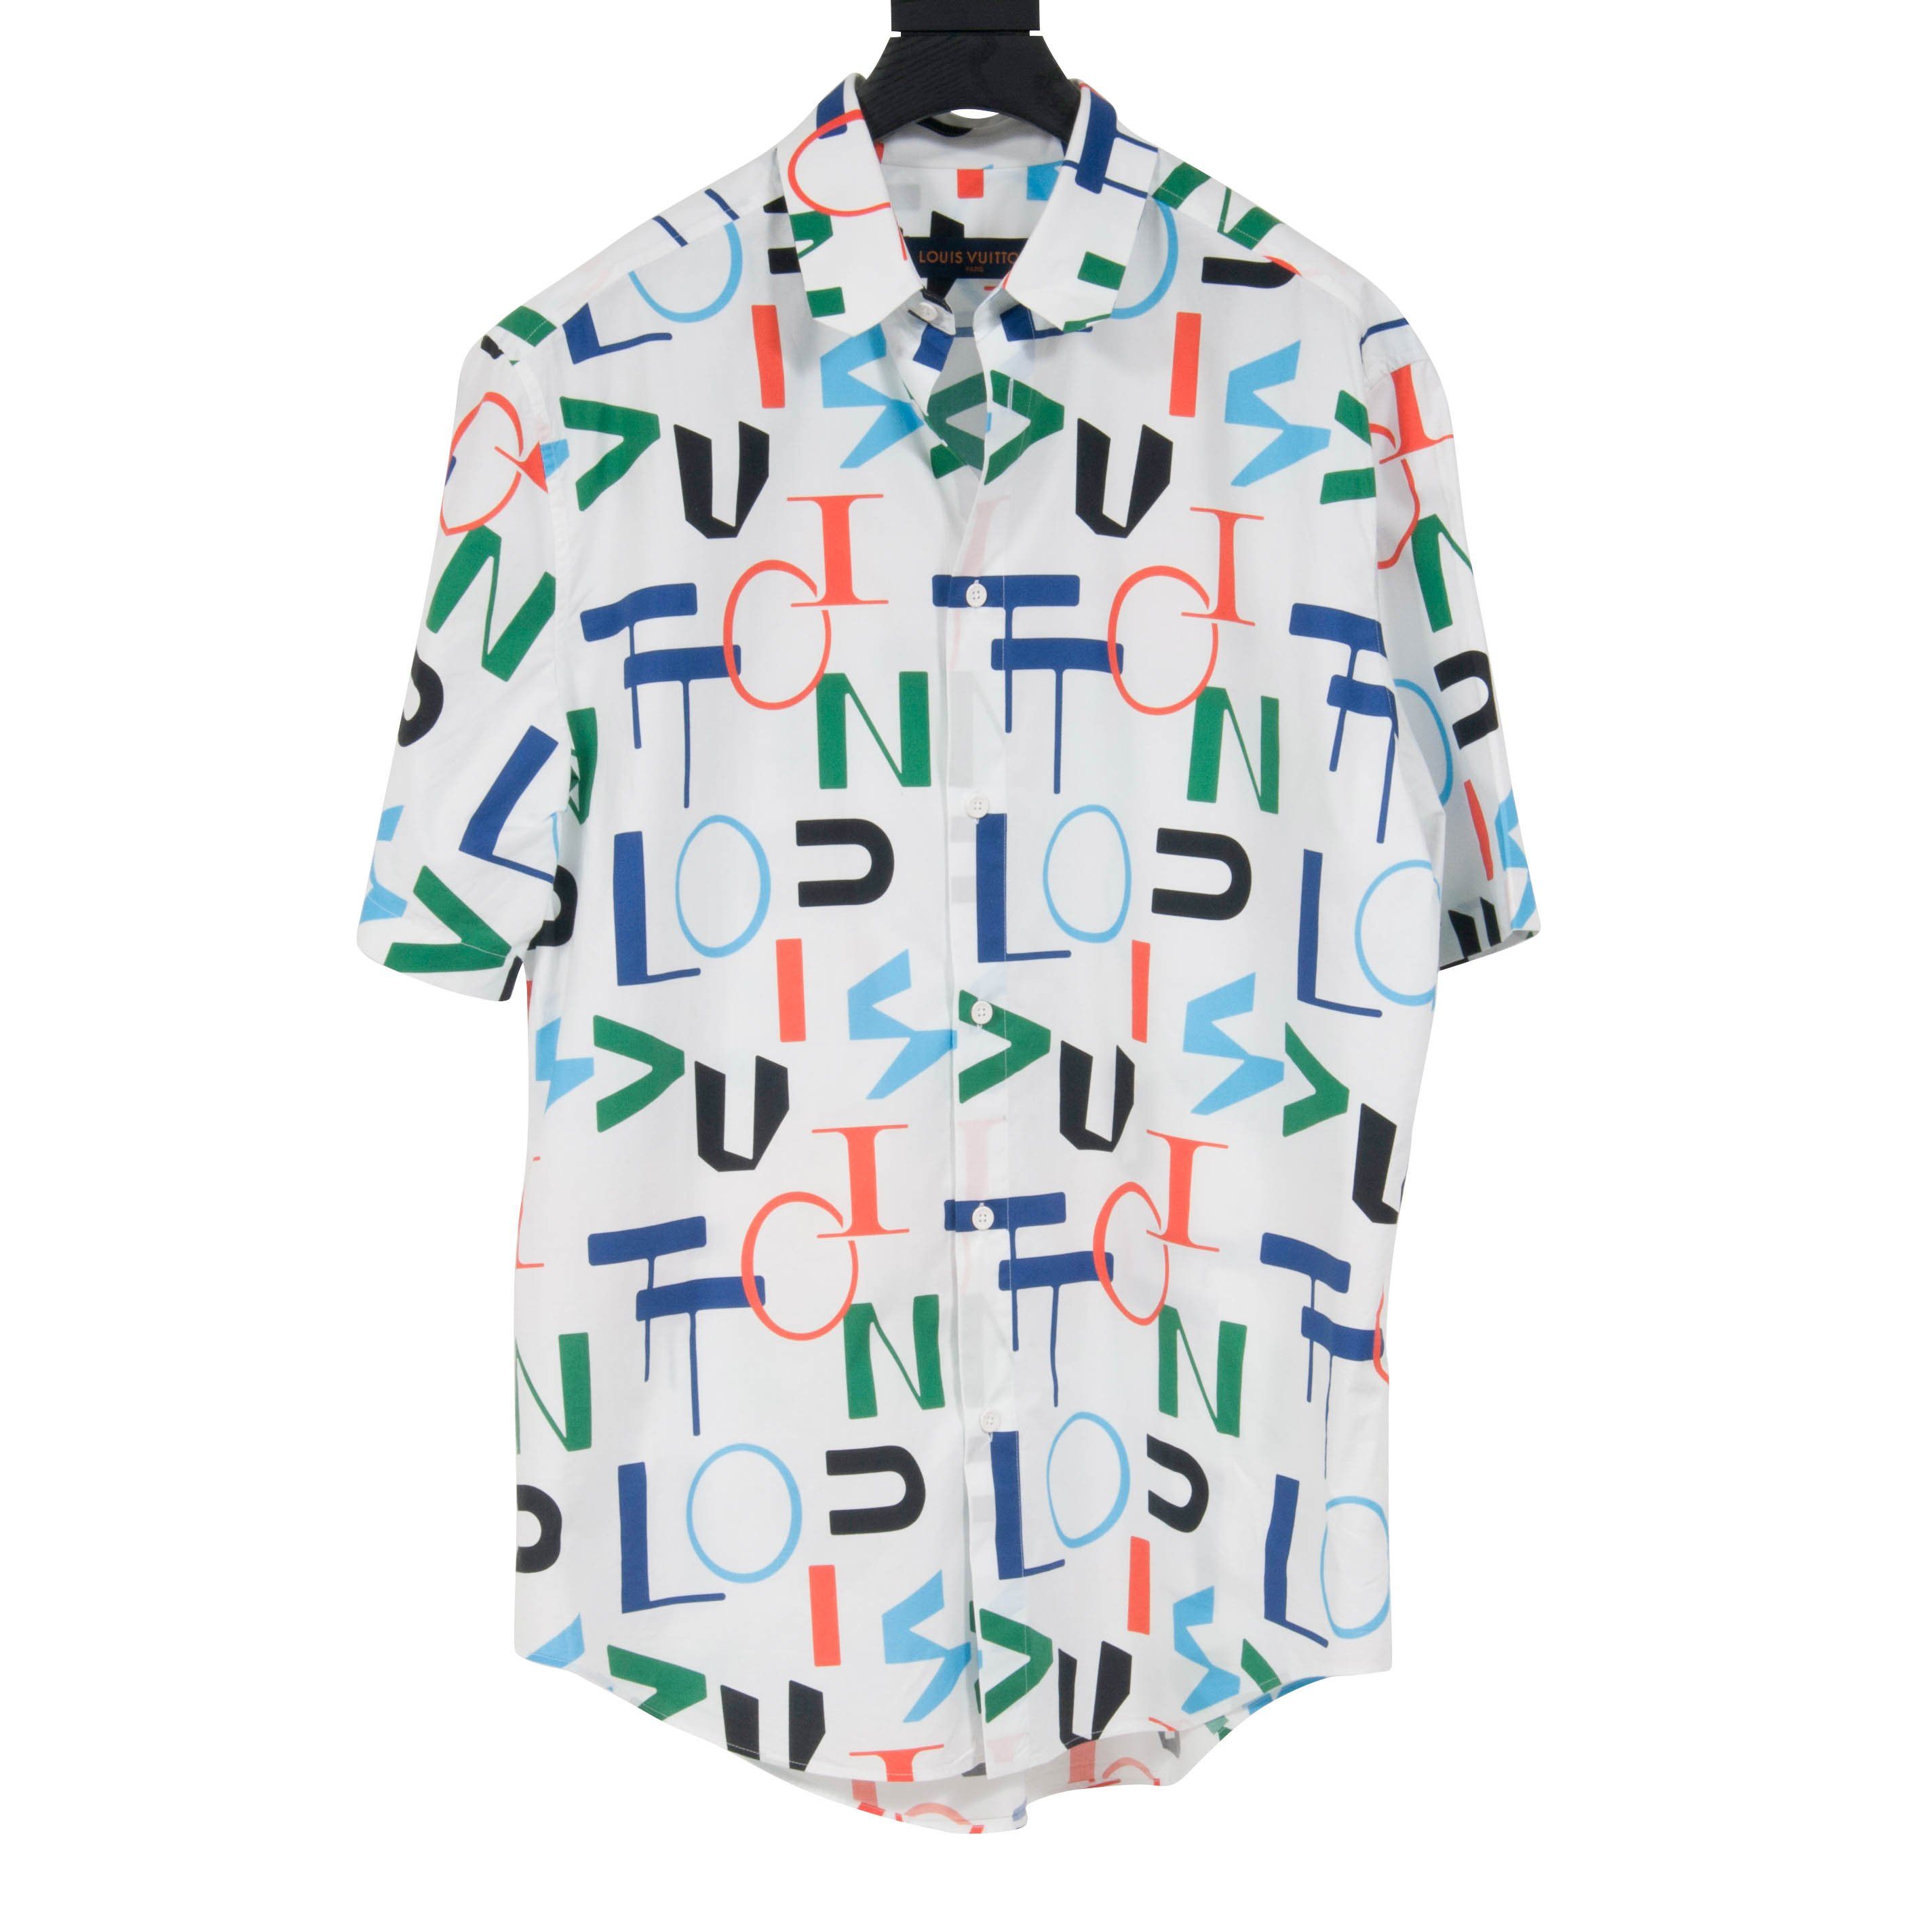 Louis Vuitton Regular DNA Poplin Shirt